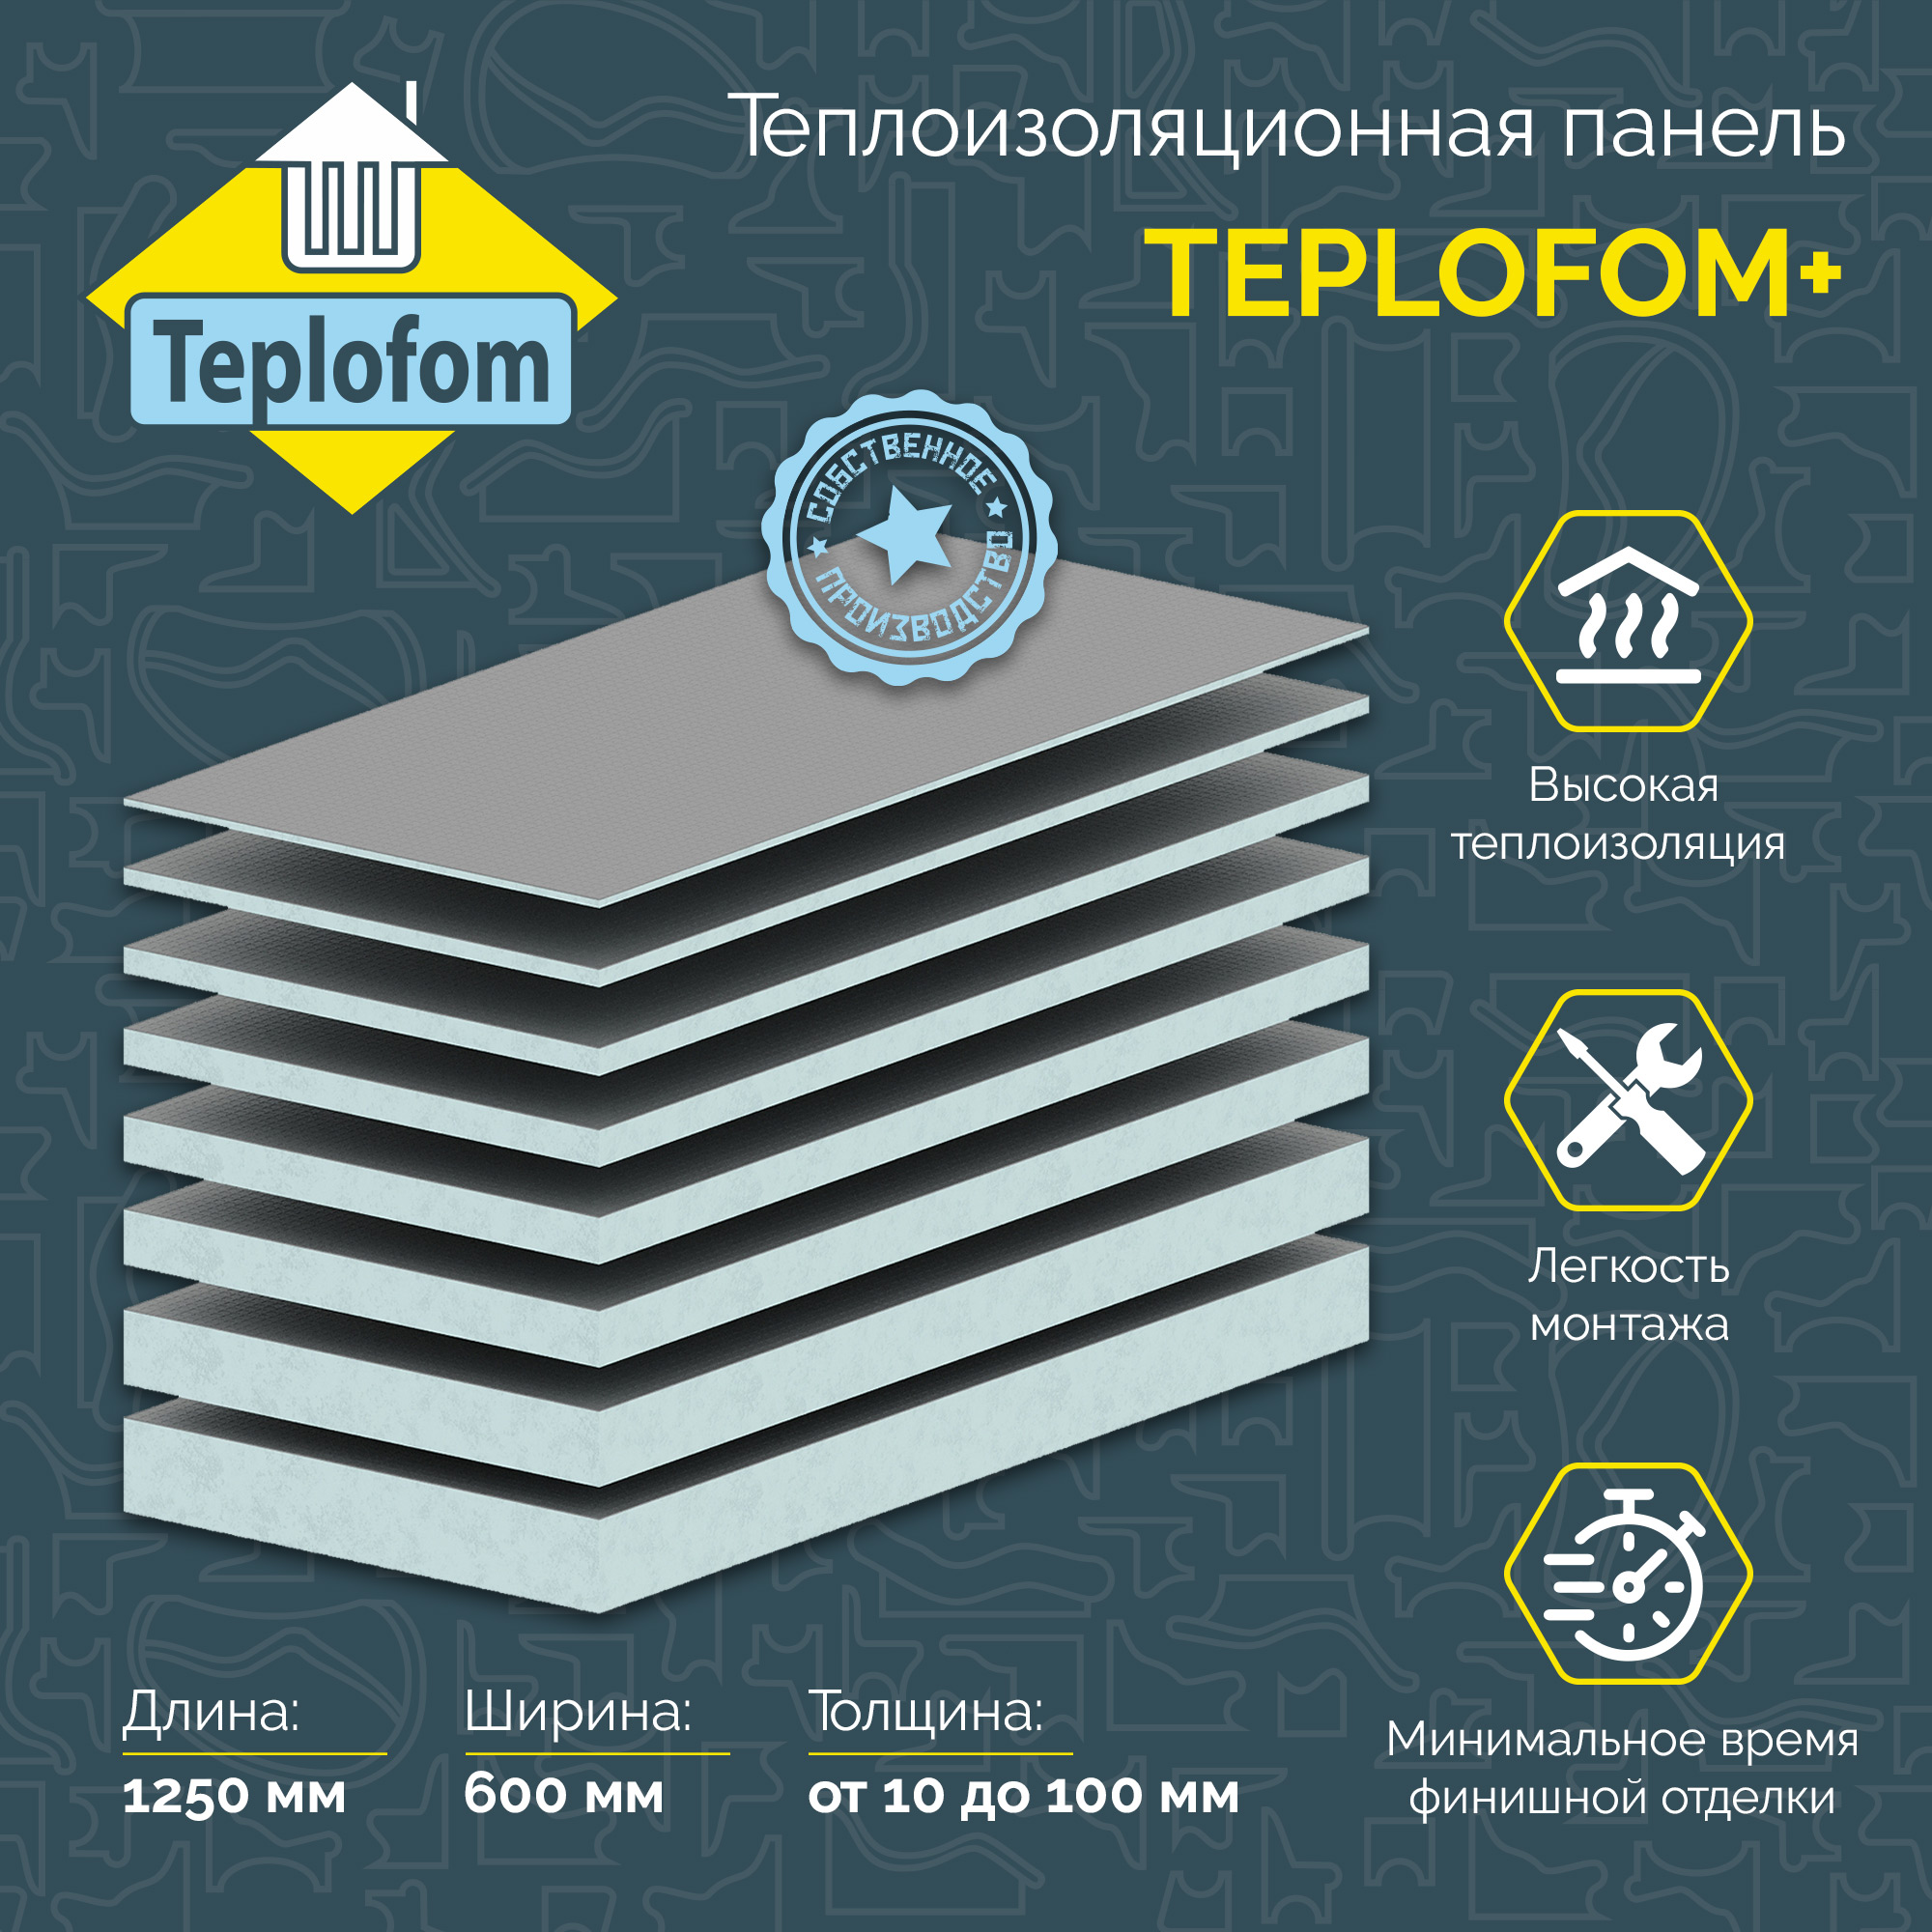 фото Теплоизоляционная панель teplofom+40 xps-01 1250x600x40мм (односторонний слой)